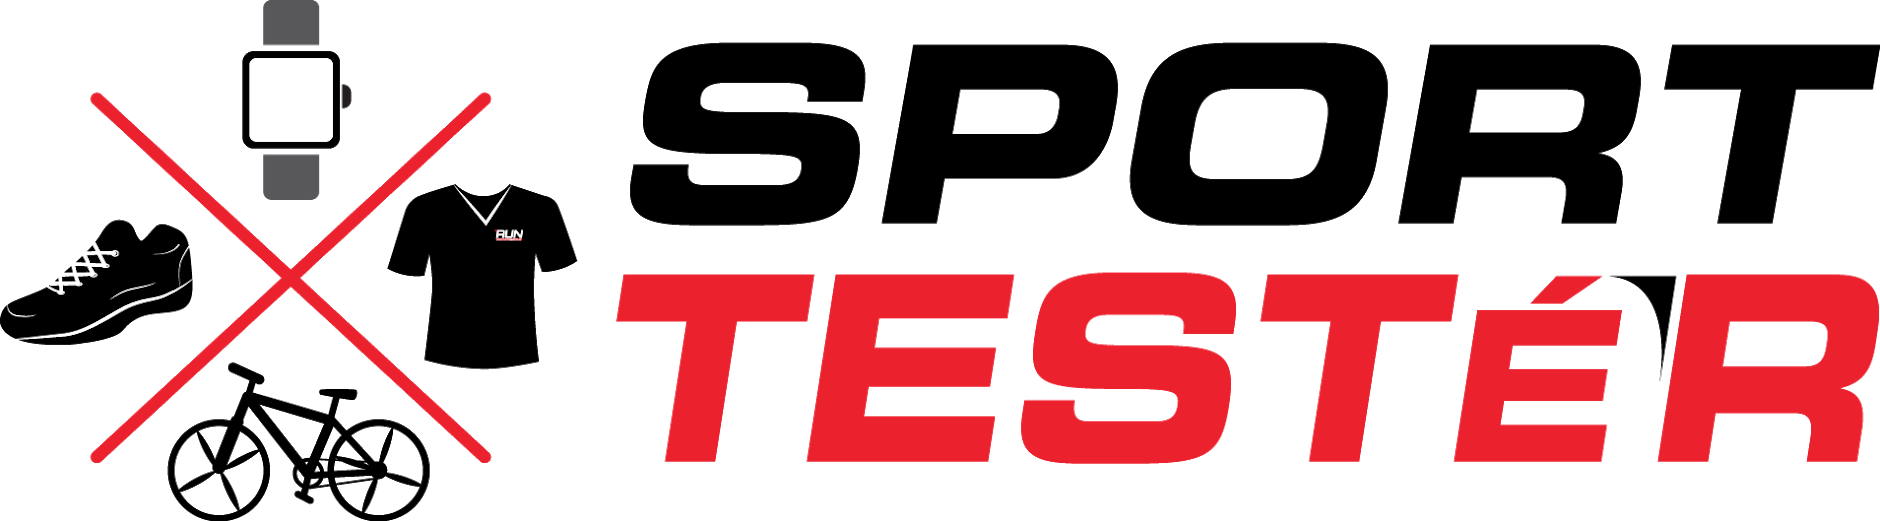 SportTester.cz – E-shop s ověřenými produkty Logo